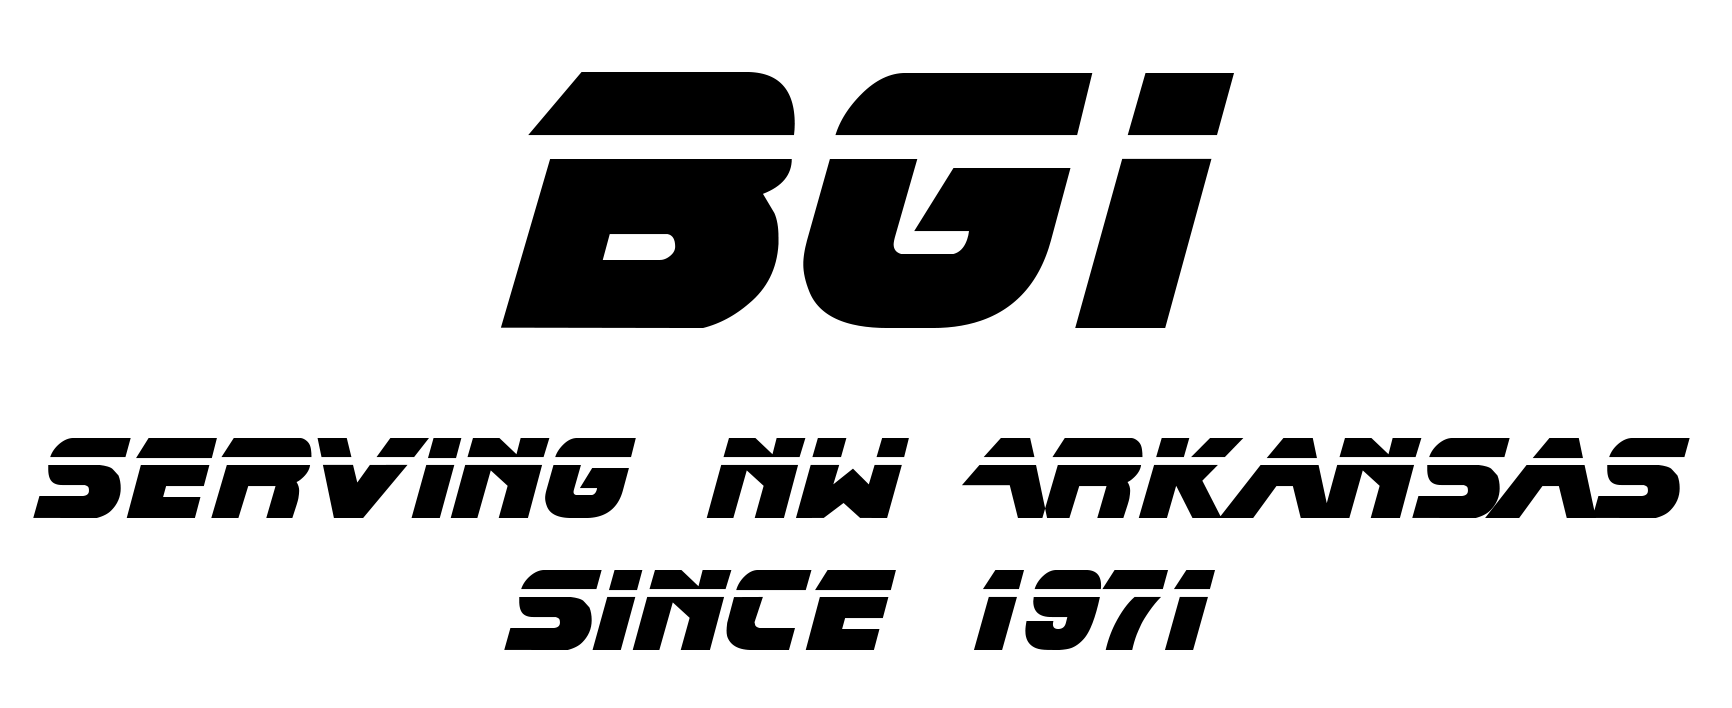 BGI Logo